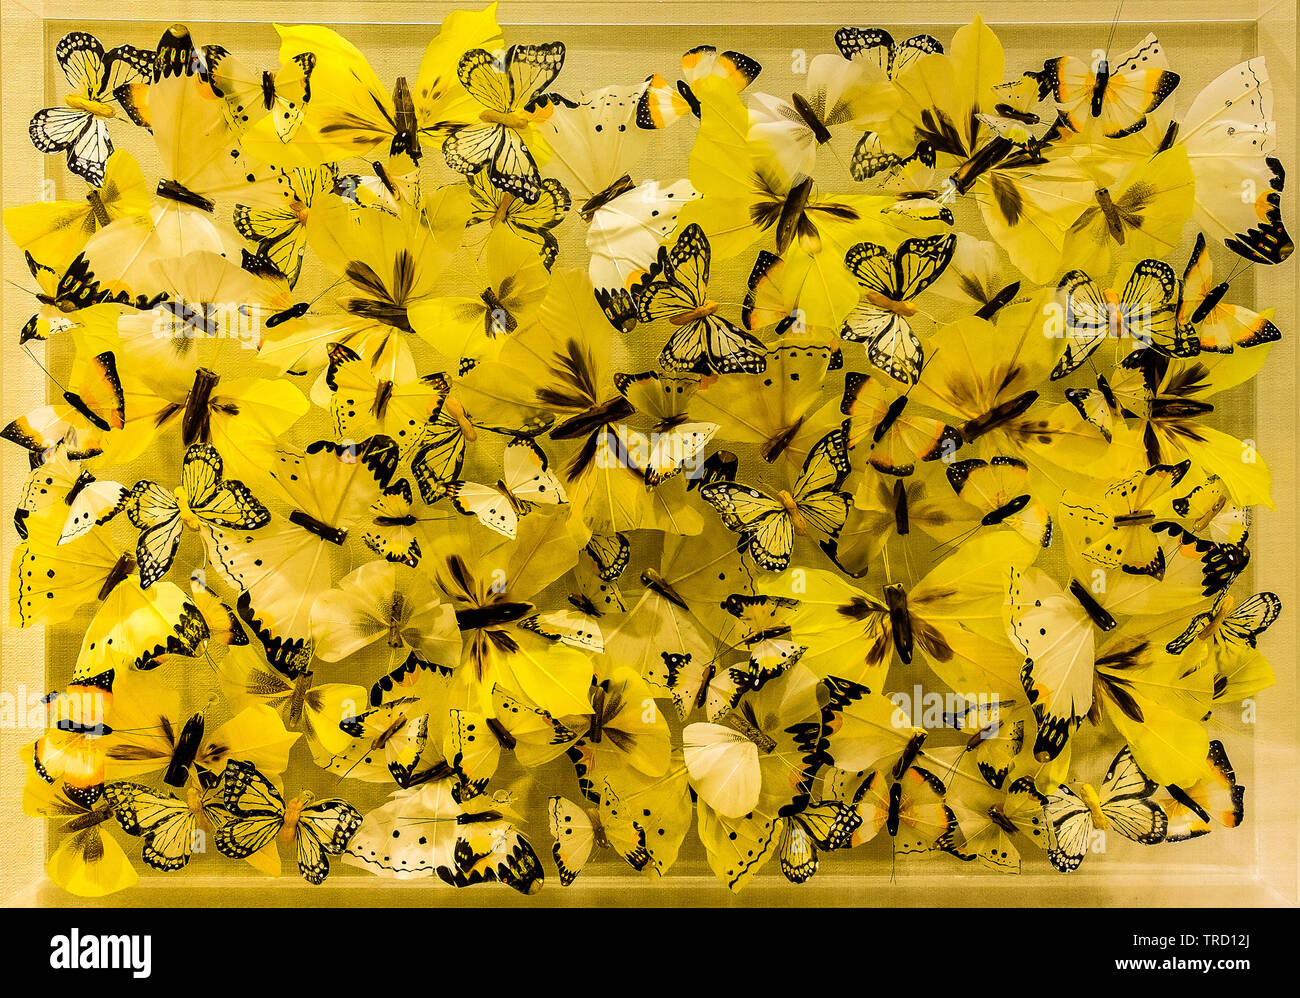 Ancora vita fatta di look-alike giallo farfalle, Hertfordshire, Inghilterra Foto Stock